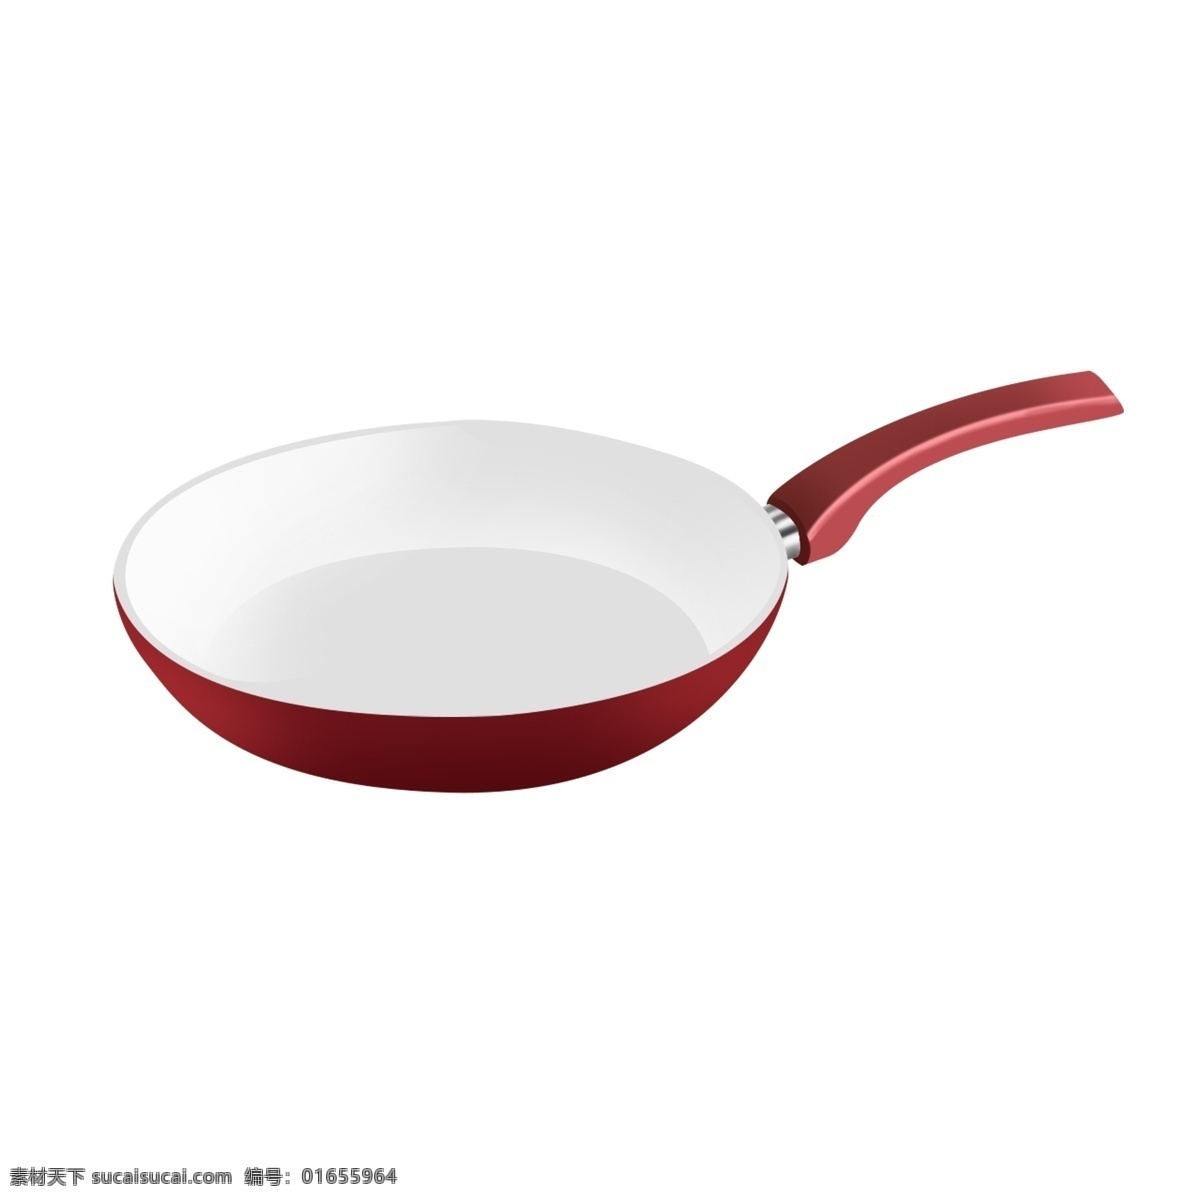 卡通 手绘 平底锅 透明 底 红色 白色 厨房用品 游戏道具 烹饪工具 道具 锅子 锅 厨具